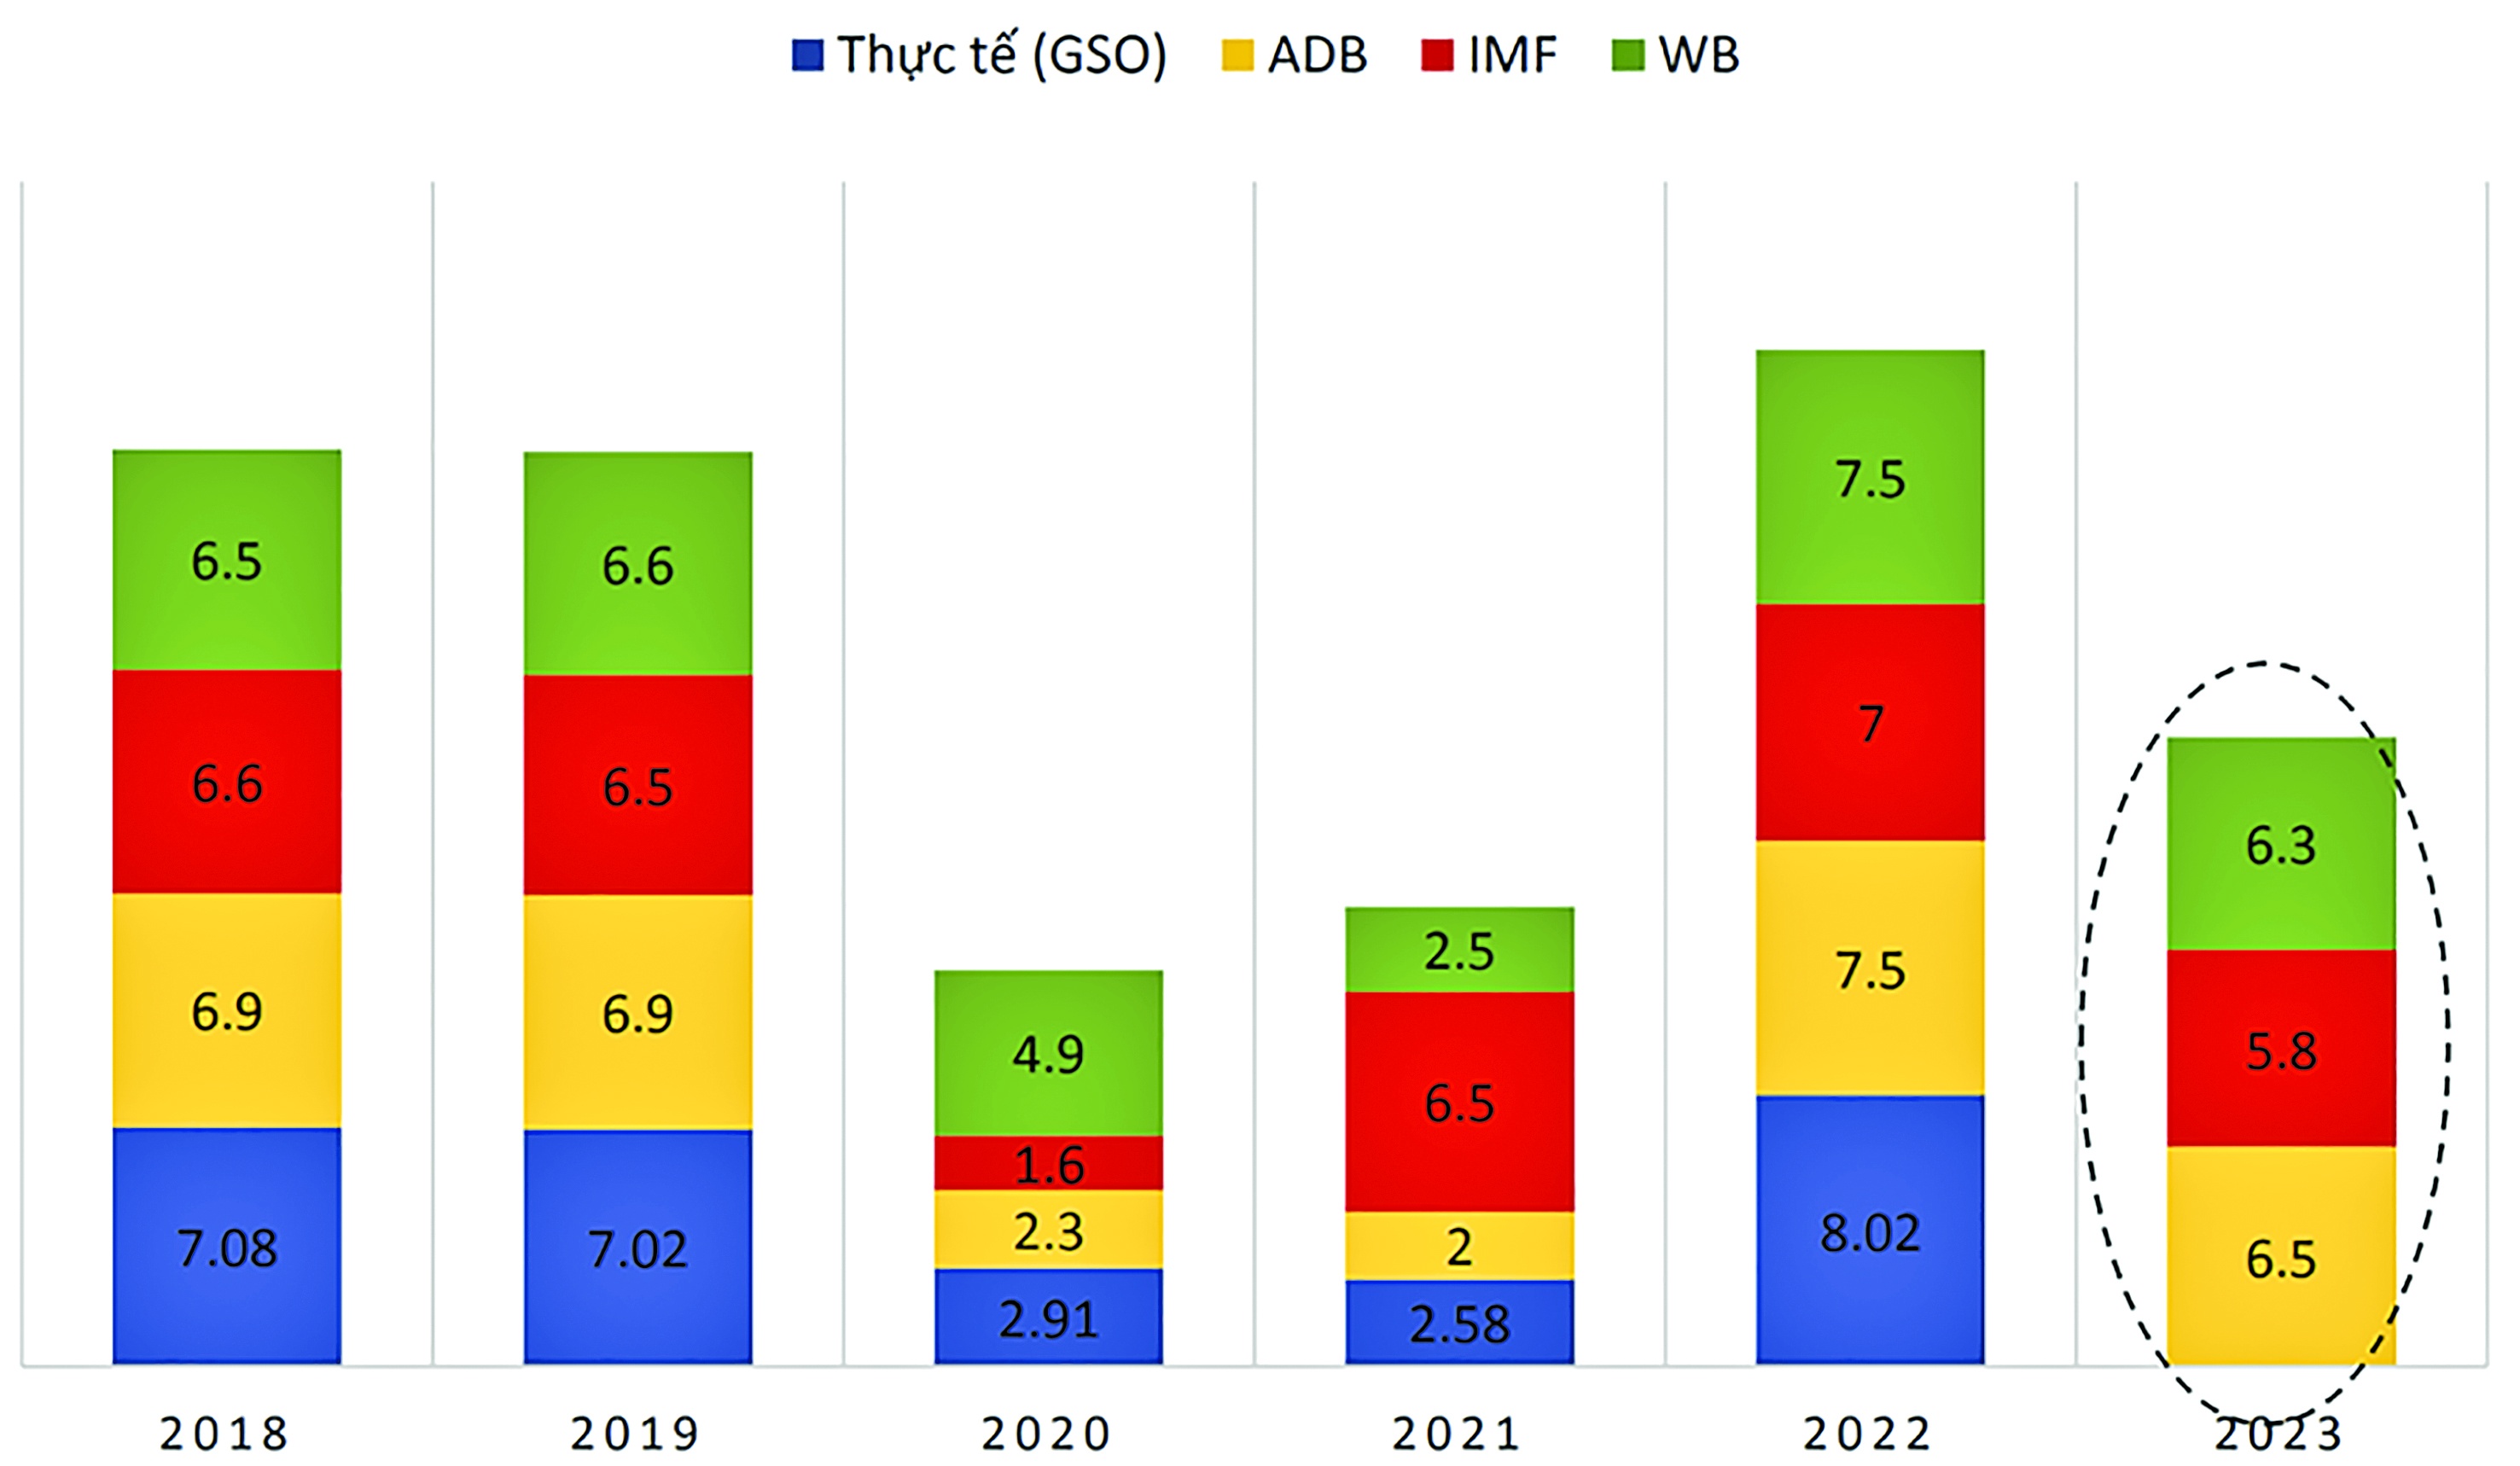 Tốc độ tăng trưởng GDP dự báo/thực tế của Việt Nam theo ADB, IMF, WB  (Nguồn: Tổng hợp của nhóm nghiên cứu)